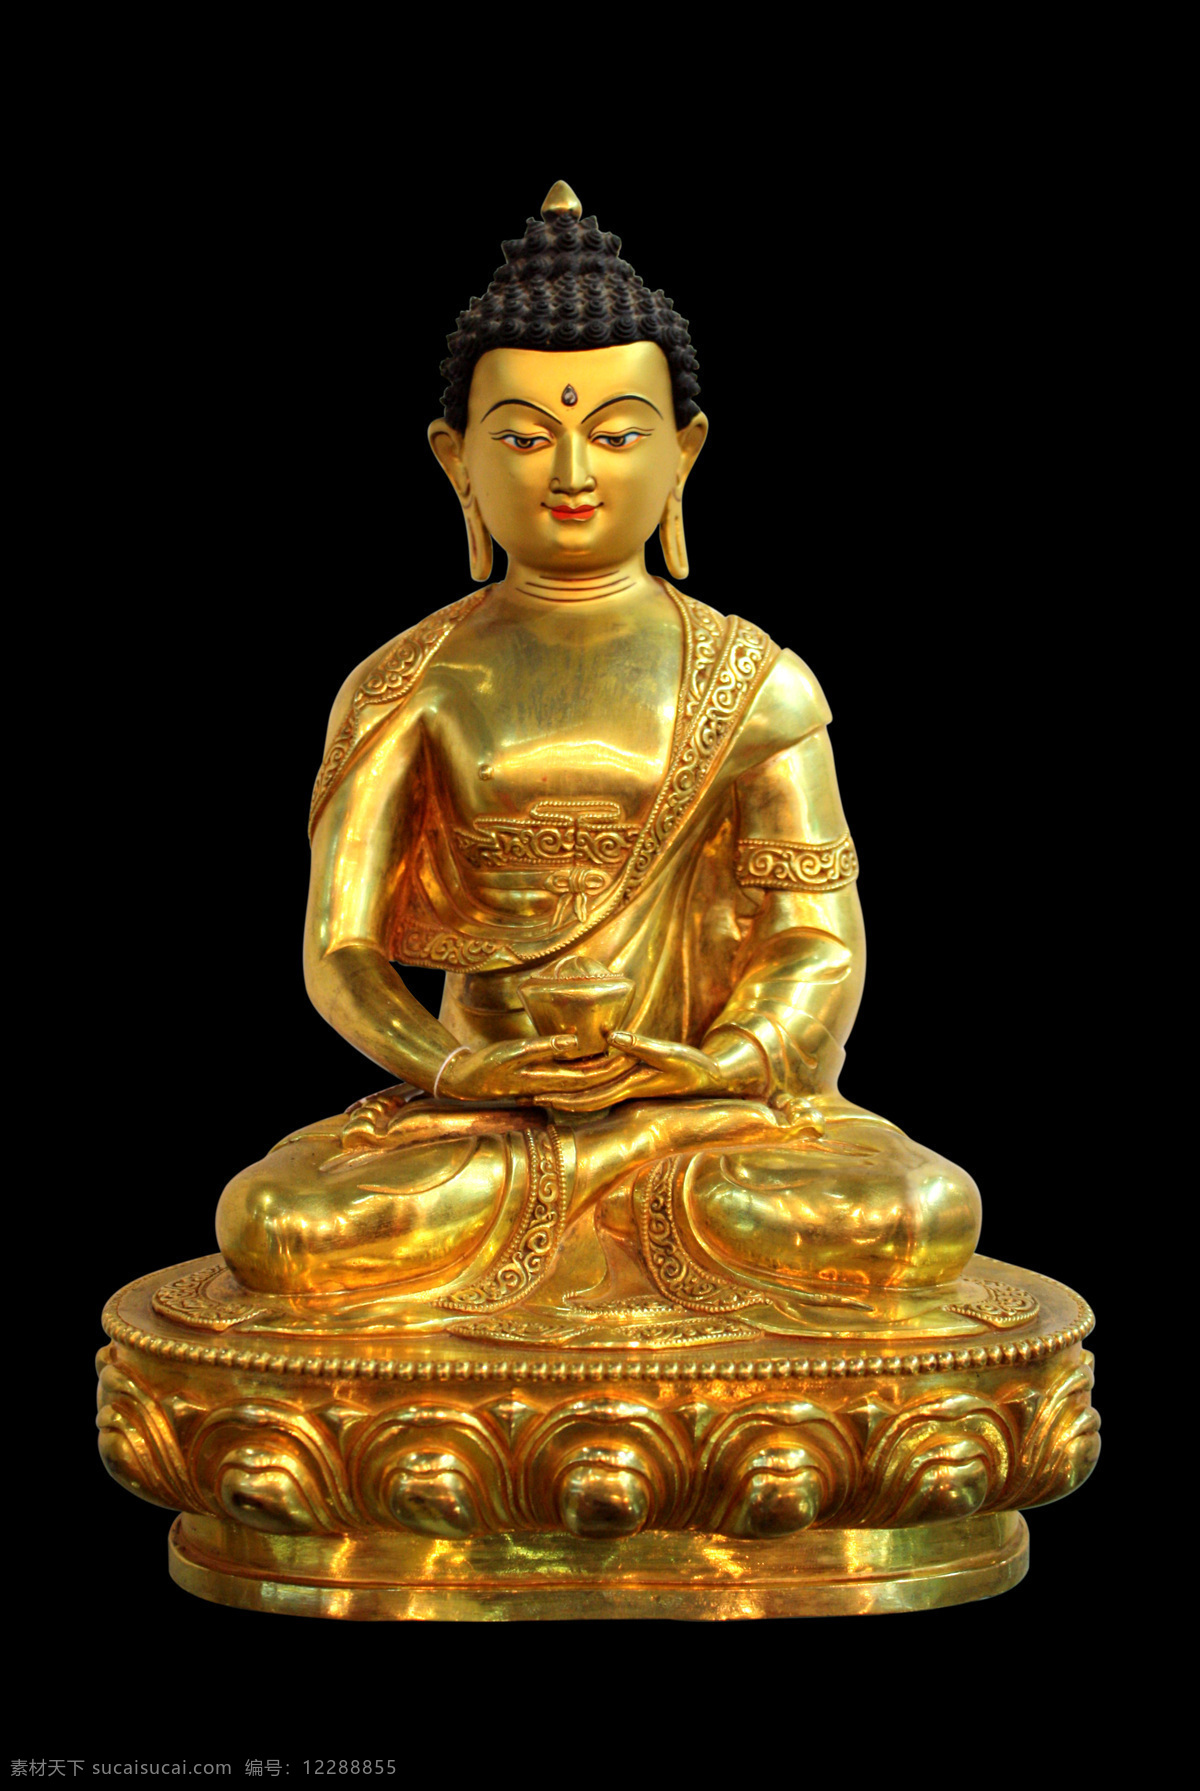 佛像 佛教 文化艺术 雕刻艺术 佛像艺术 传统文化 金佛